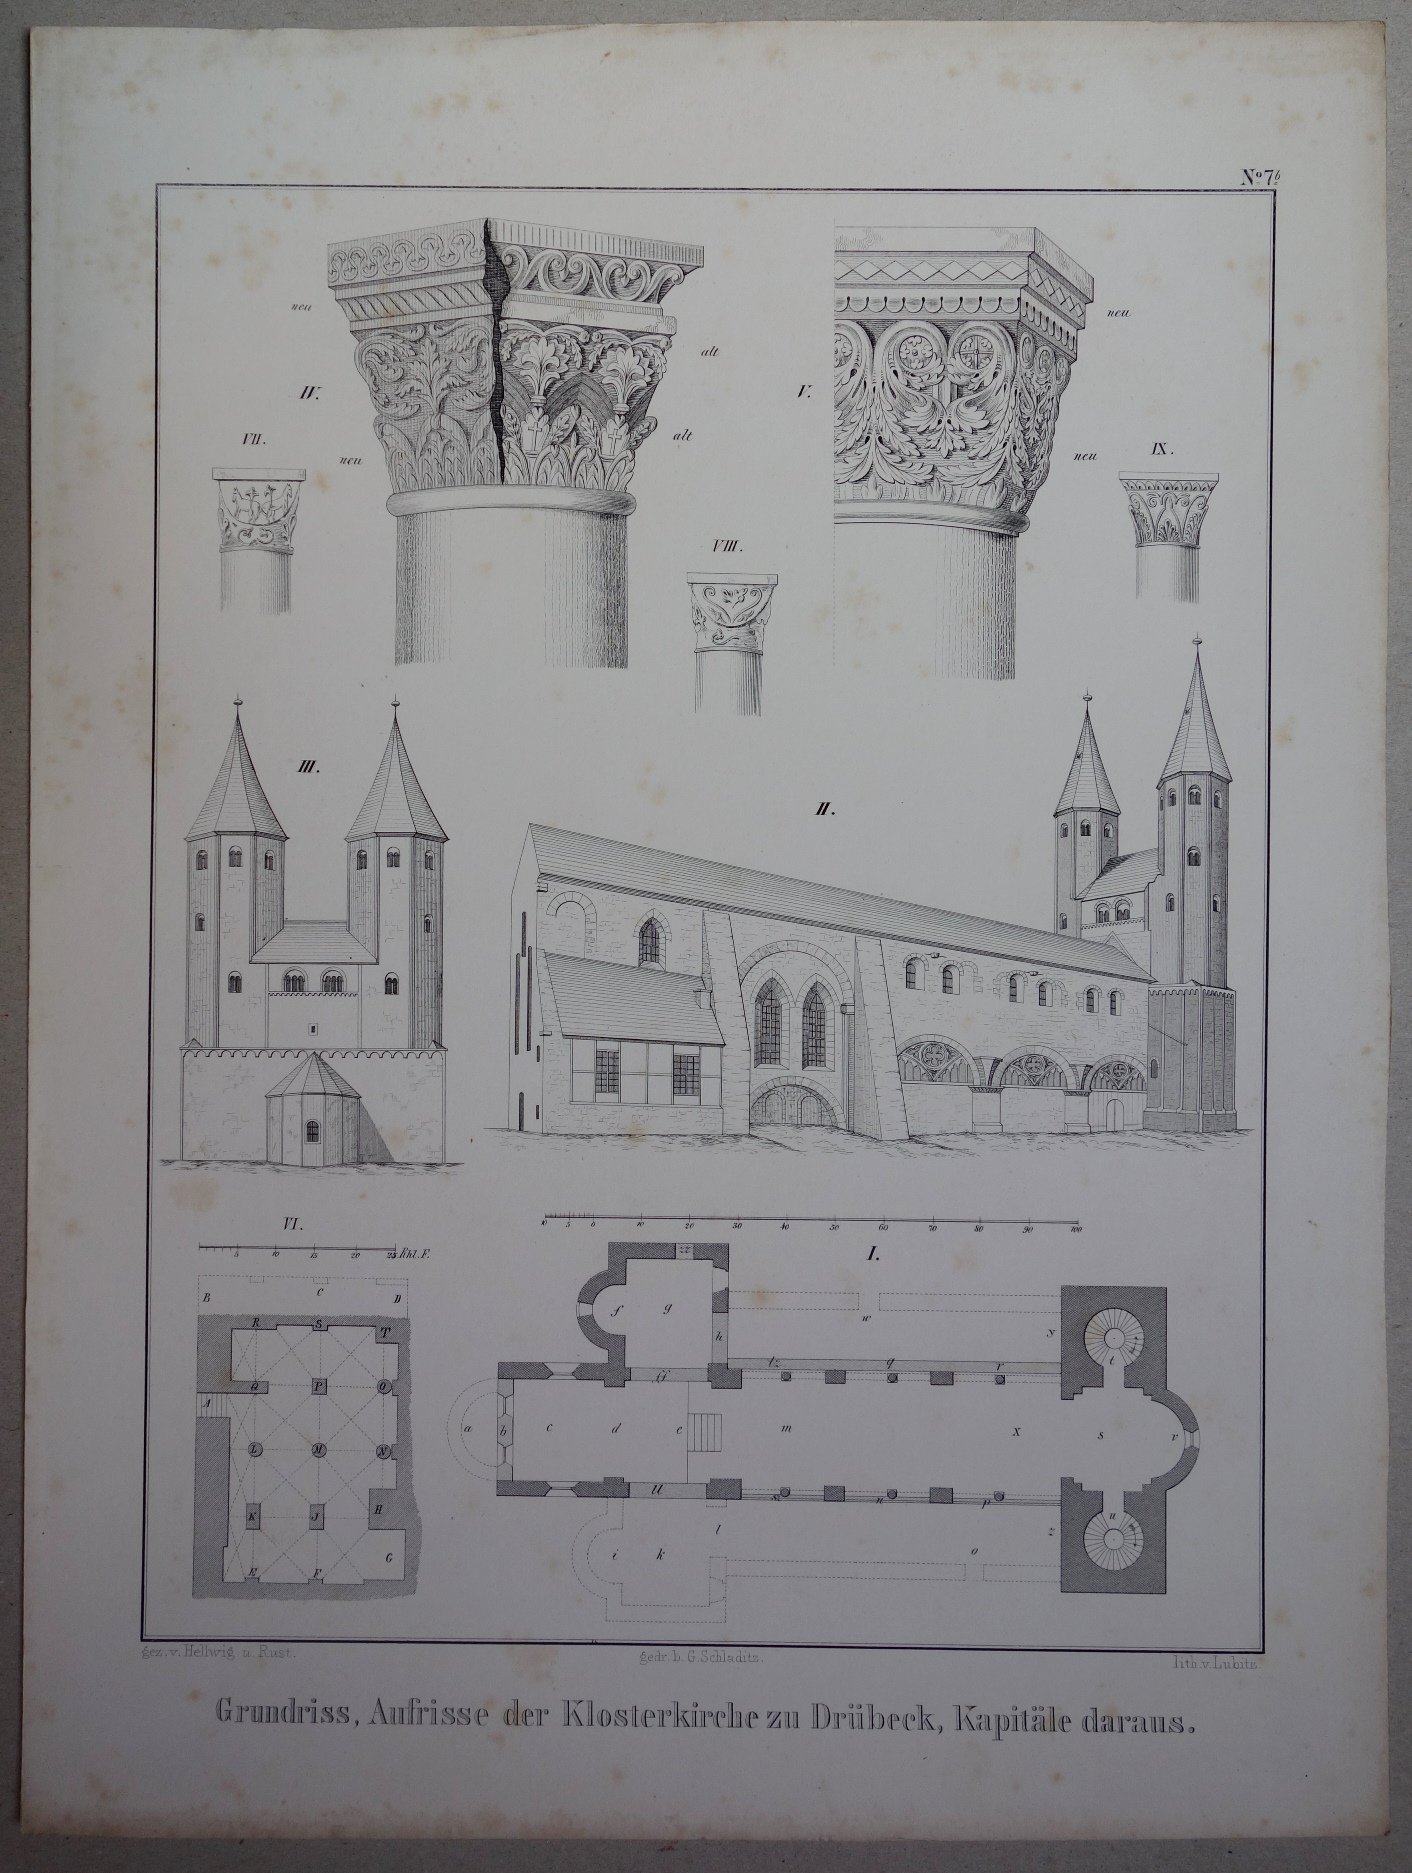 Drübeck: Grundriß, Aufrisse und der Details der Klosterkirche, 1858 (aus: Brockhaus "Baukunst des Mittelalters") (Schloß Wernigerode GmbH RR-F)